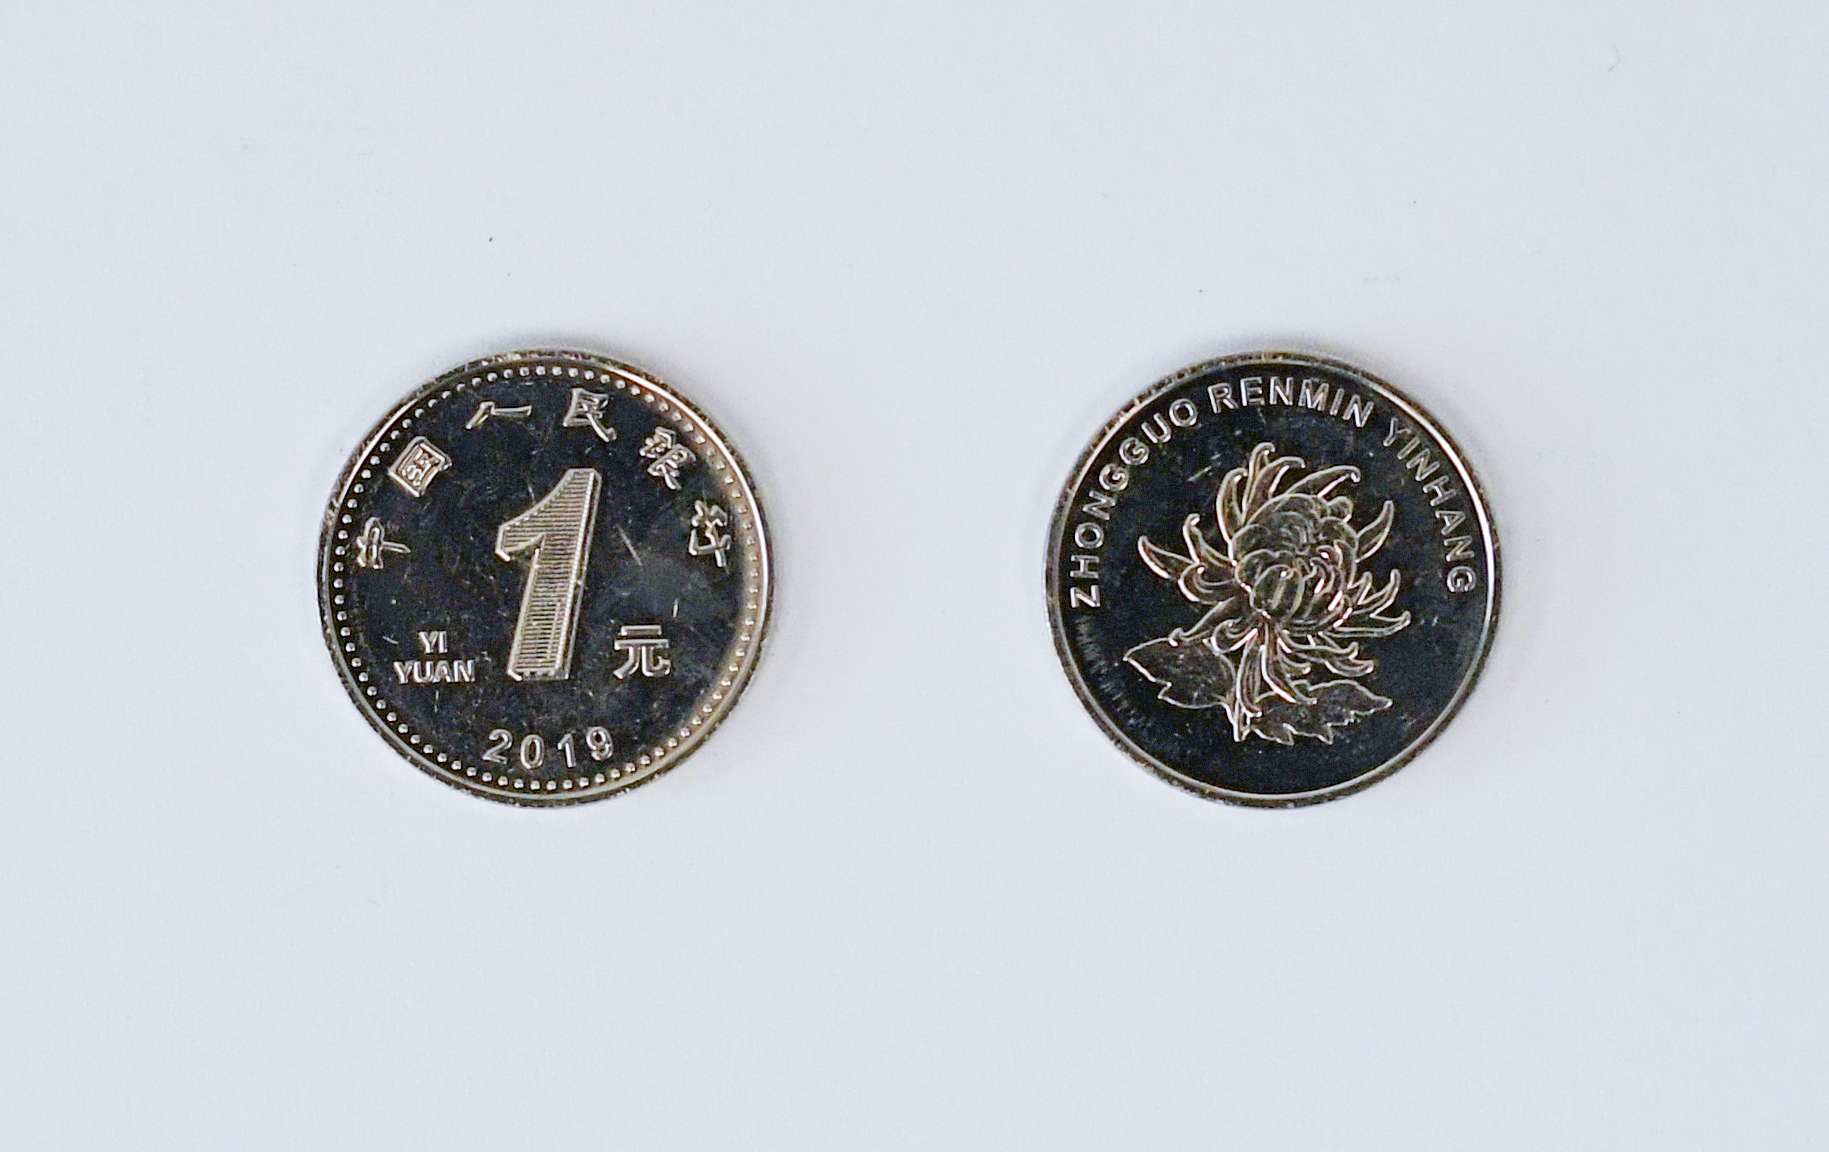 2019年版第五套人民币1元硬币正反面(8月30日摄)